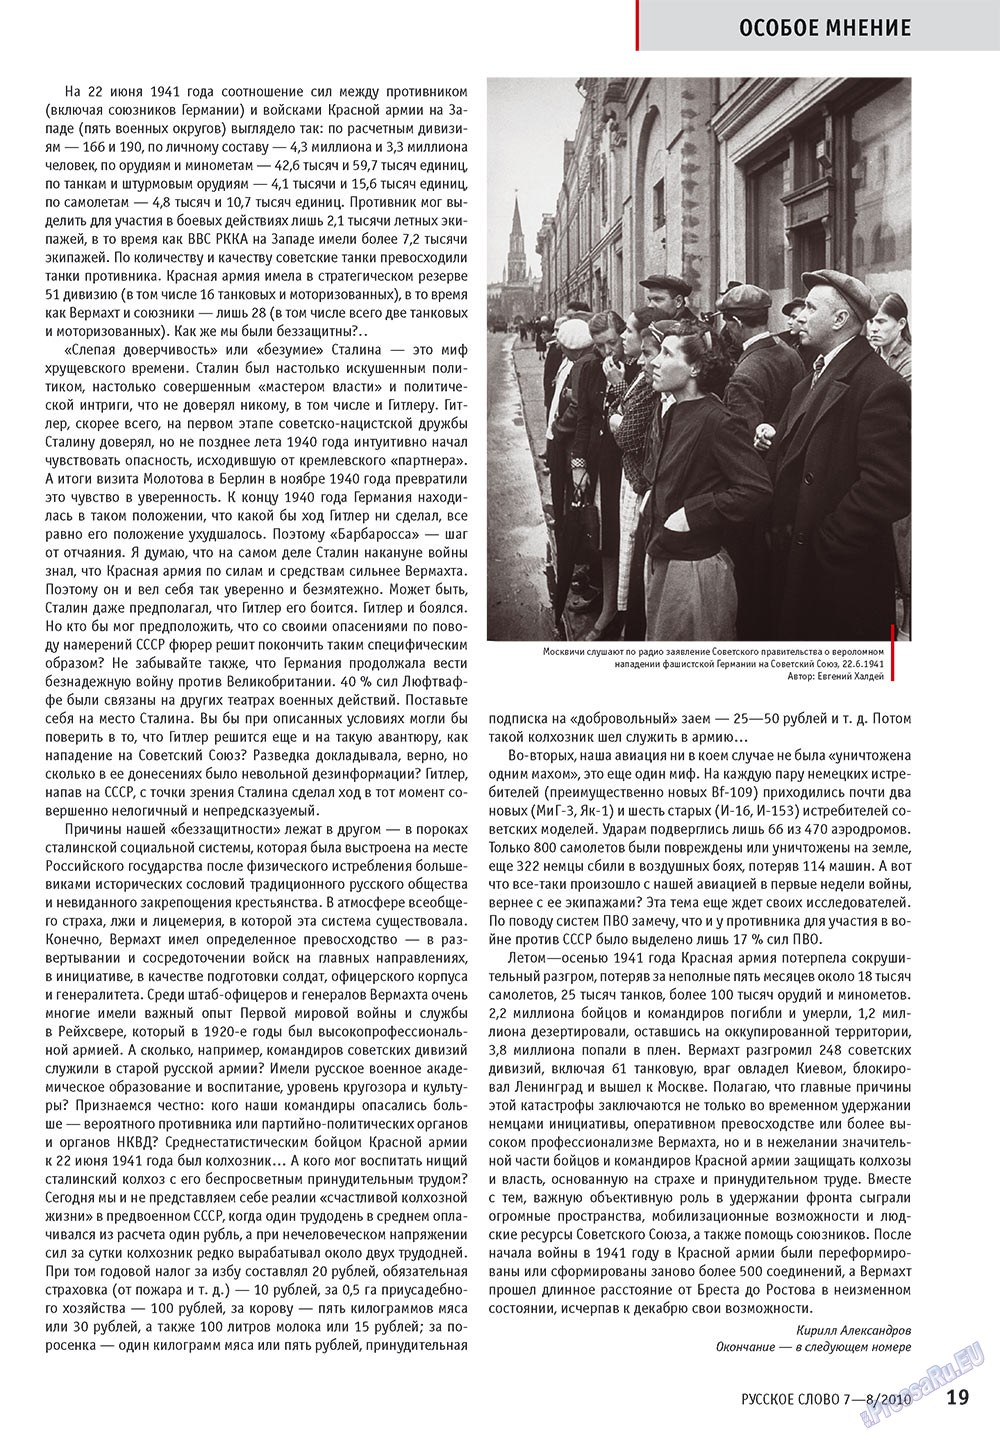 Русское слово, журнал. 2010 №7 стр.21